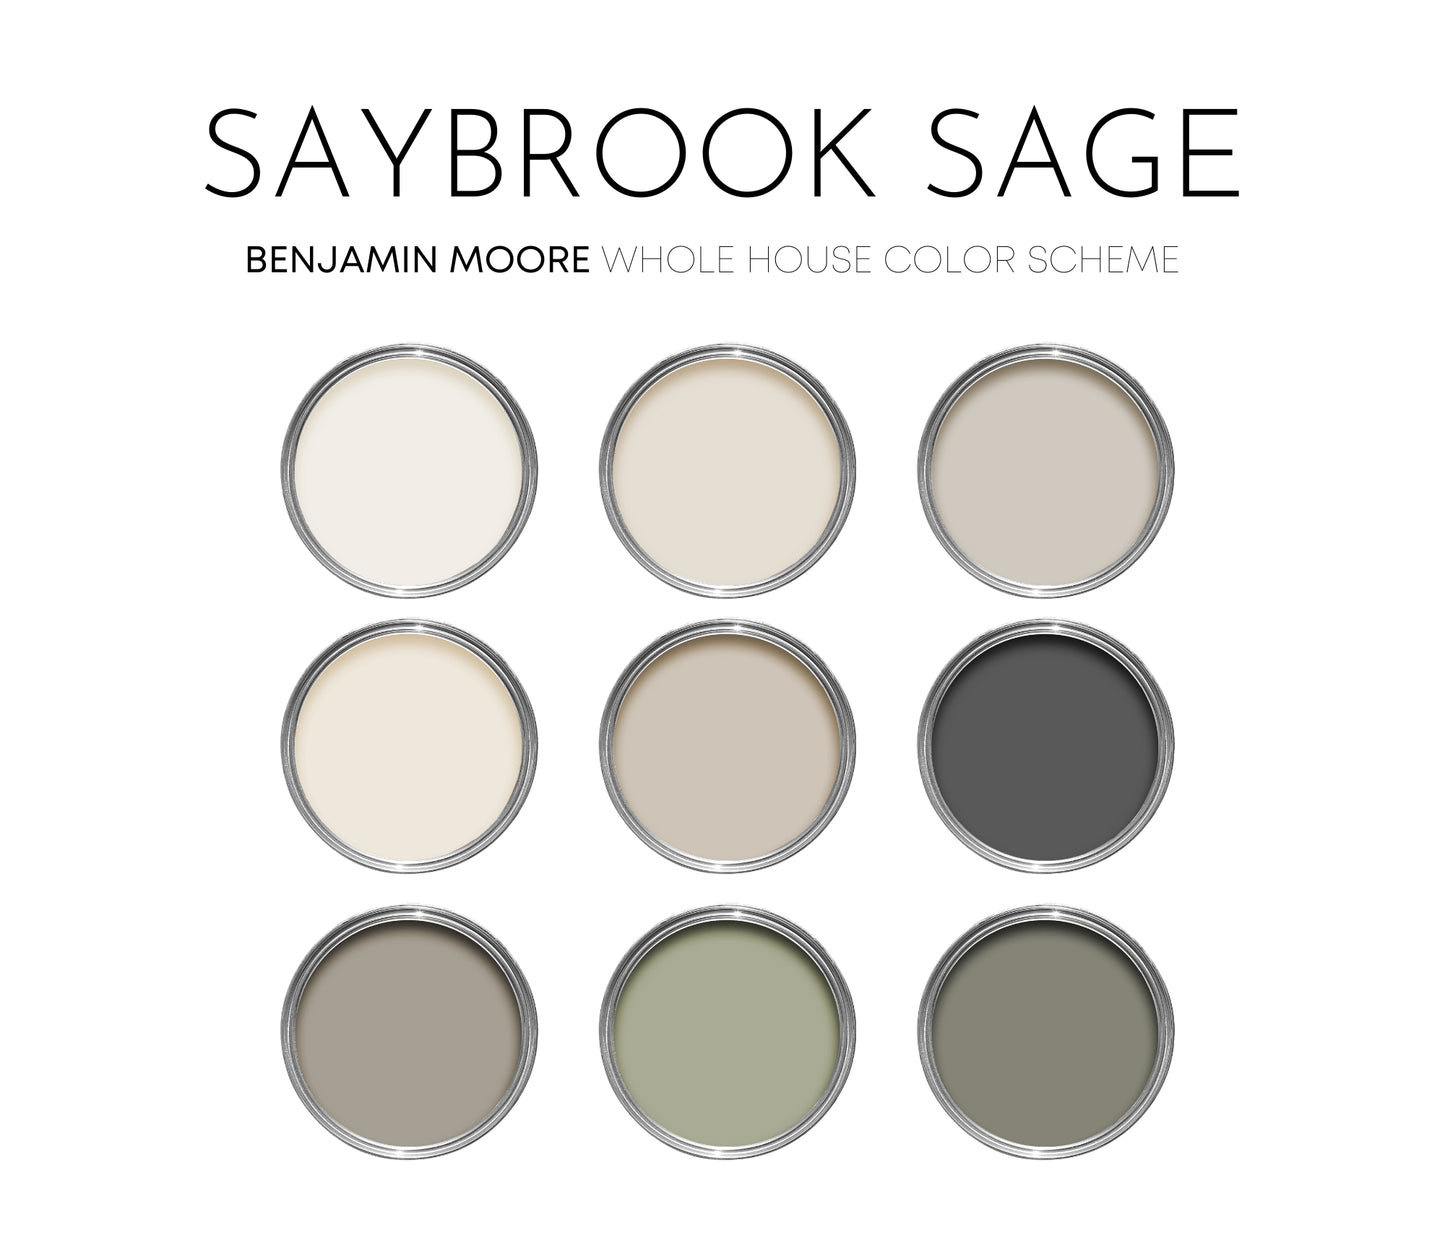 Saybrook Sage Benjamin Moore Paint Palette, Warm Neutral Interior Paint Colors, Cottage Color Scheme, White Dove